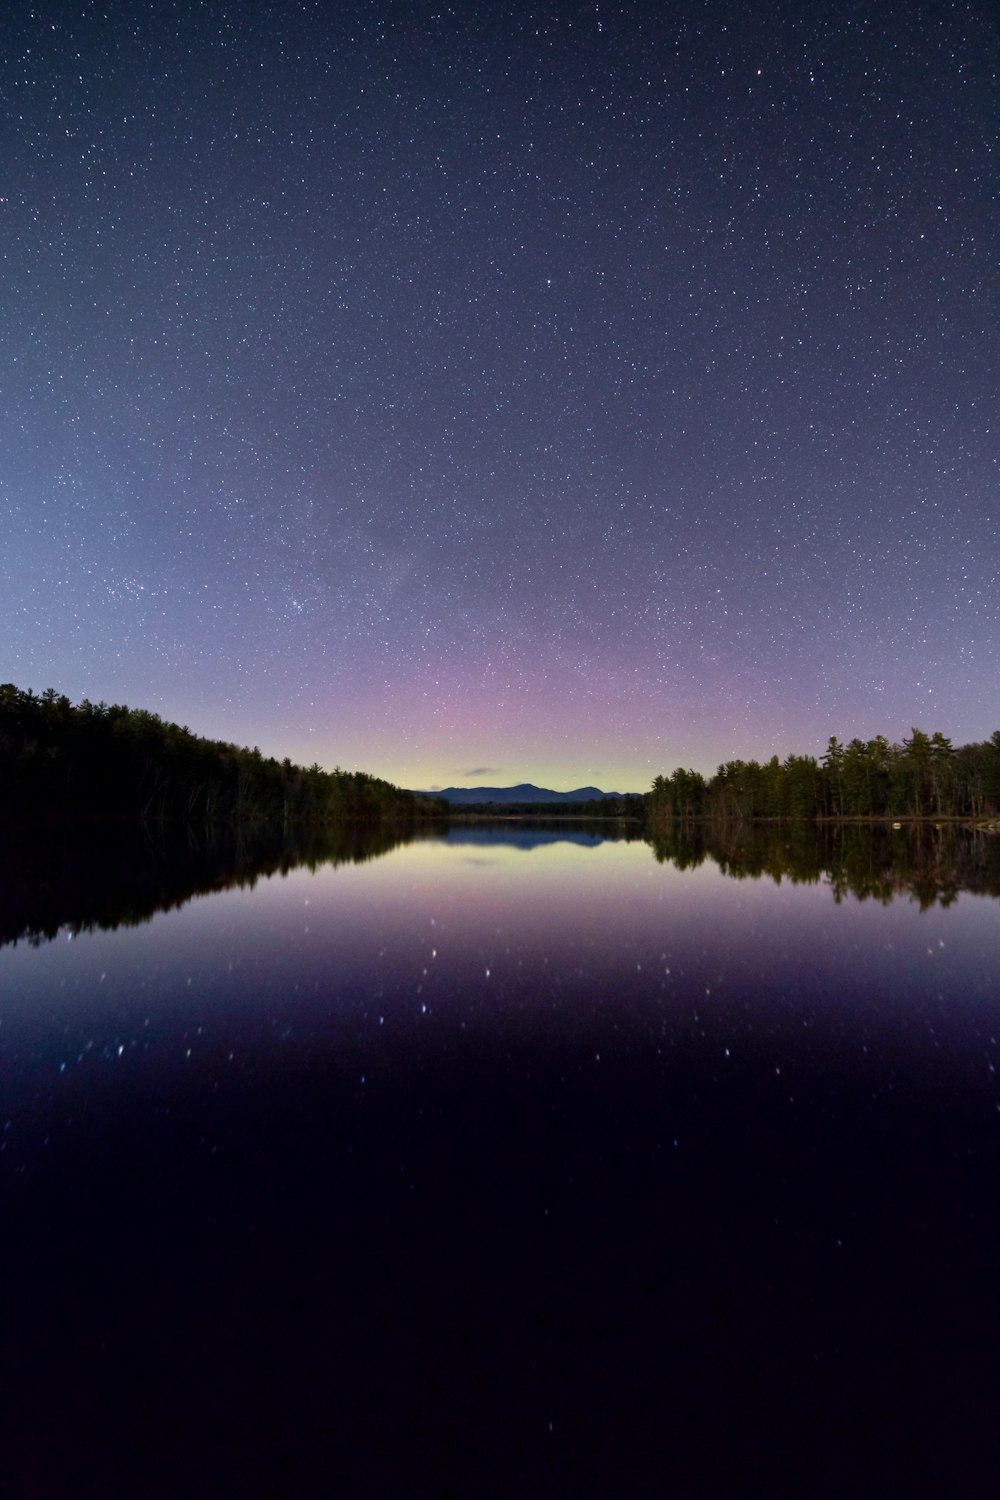 Photographie de réflexion de l’étoile et du ciel sous un plan d’eau calme